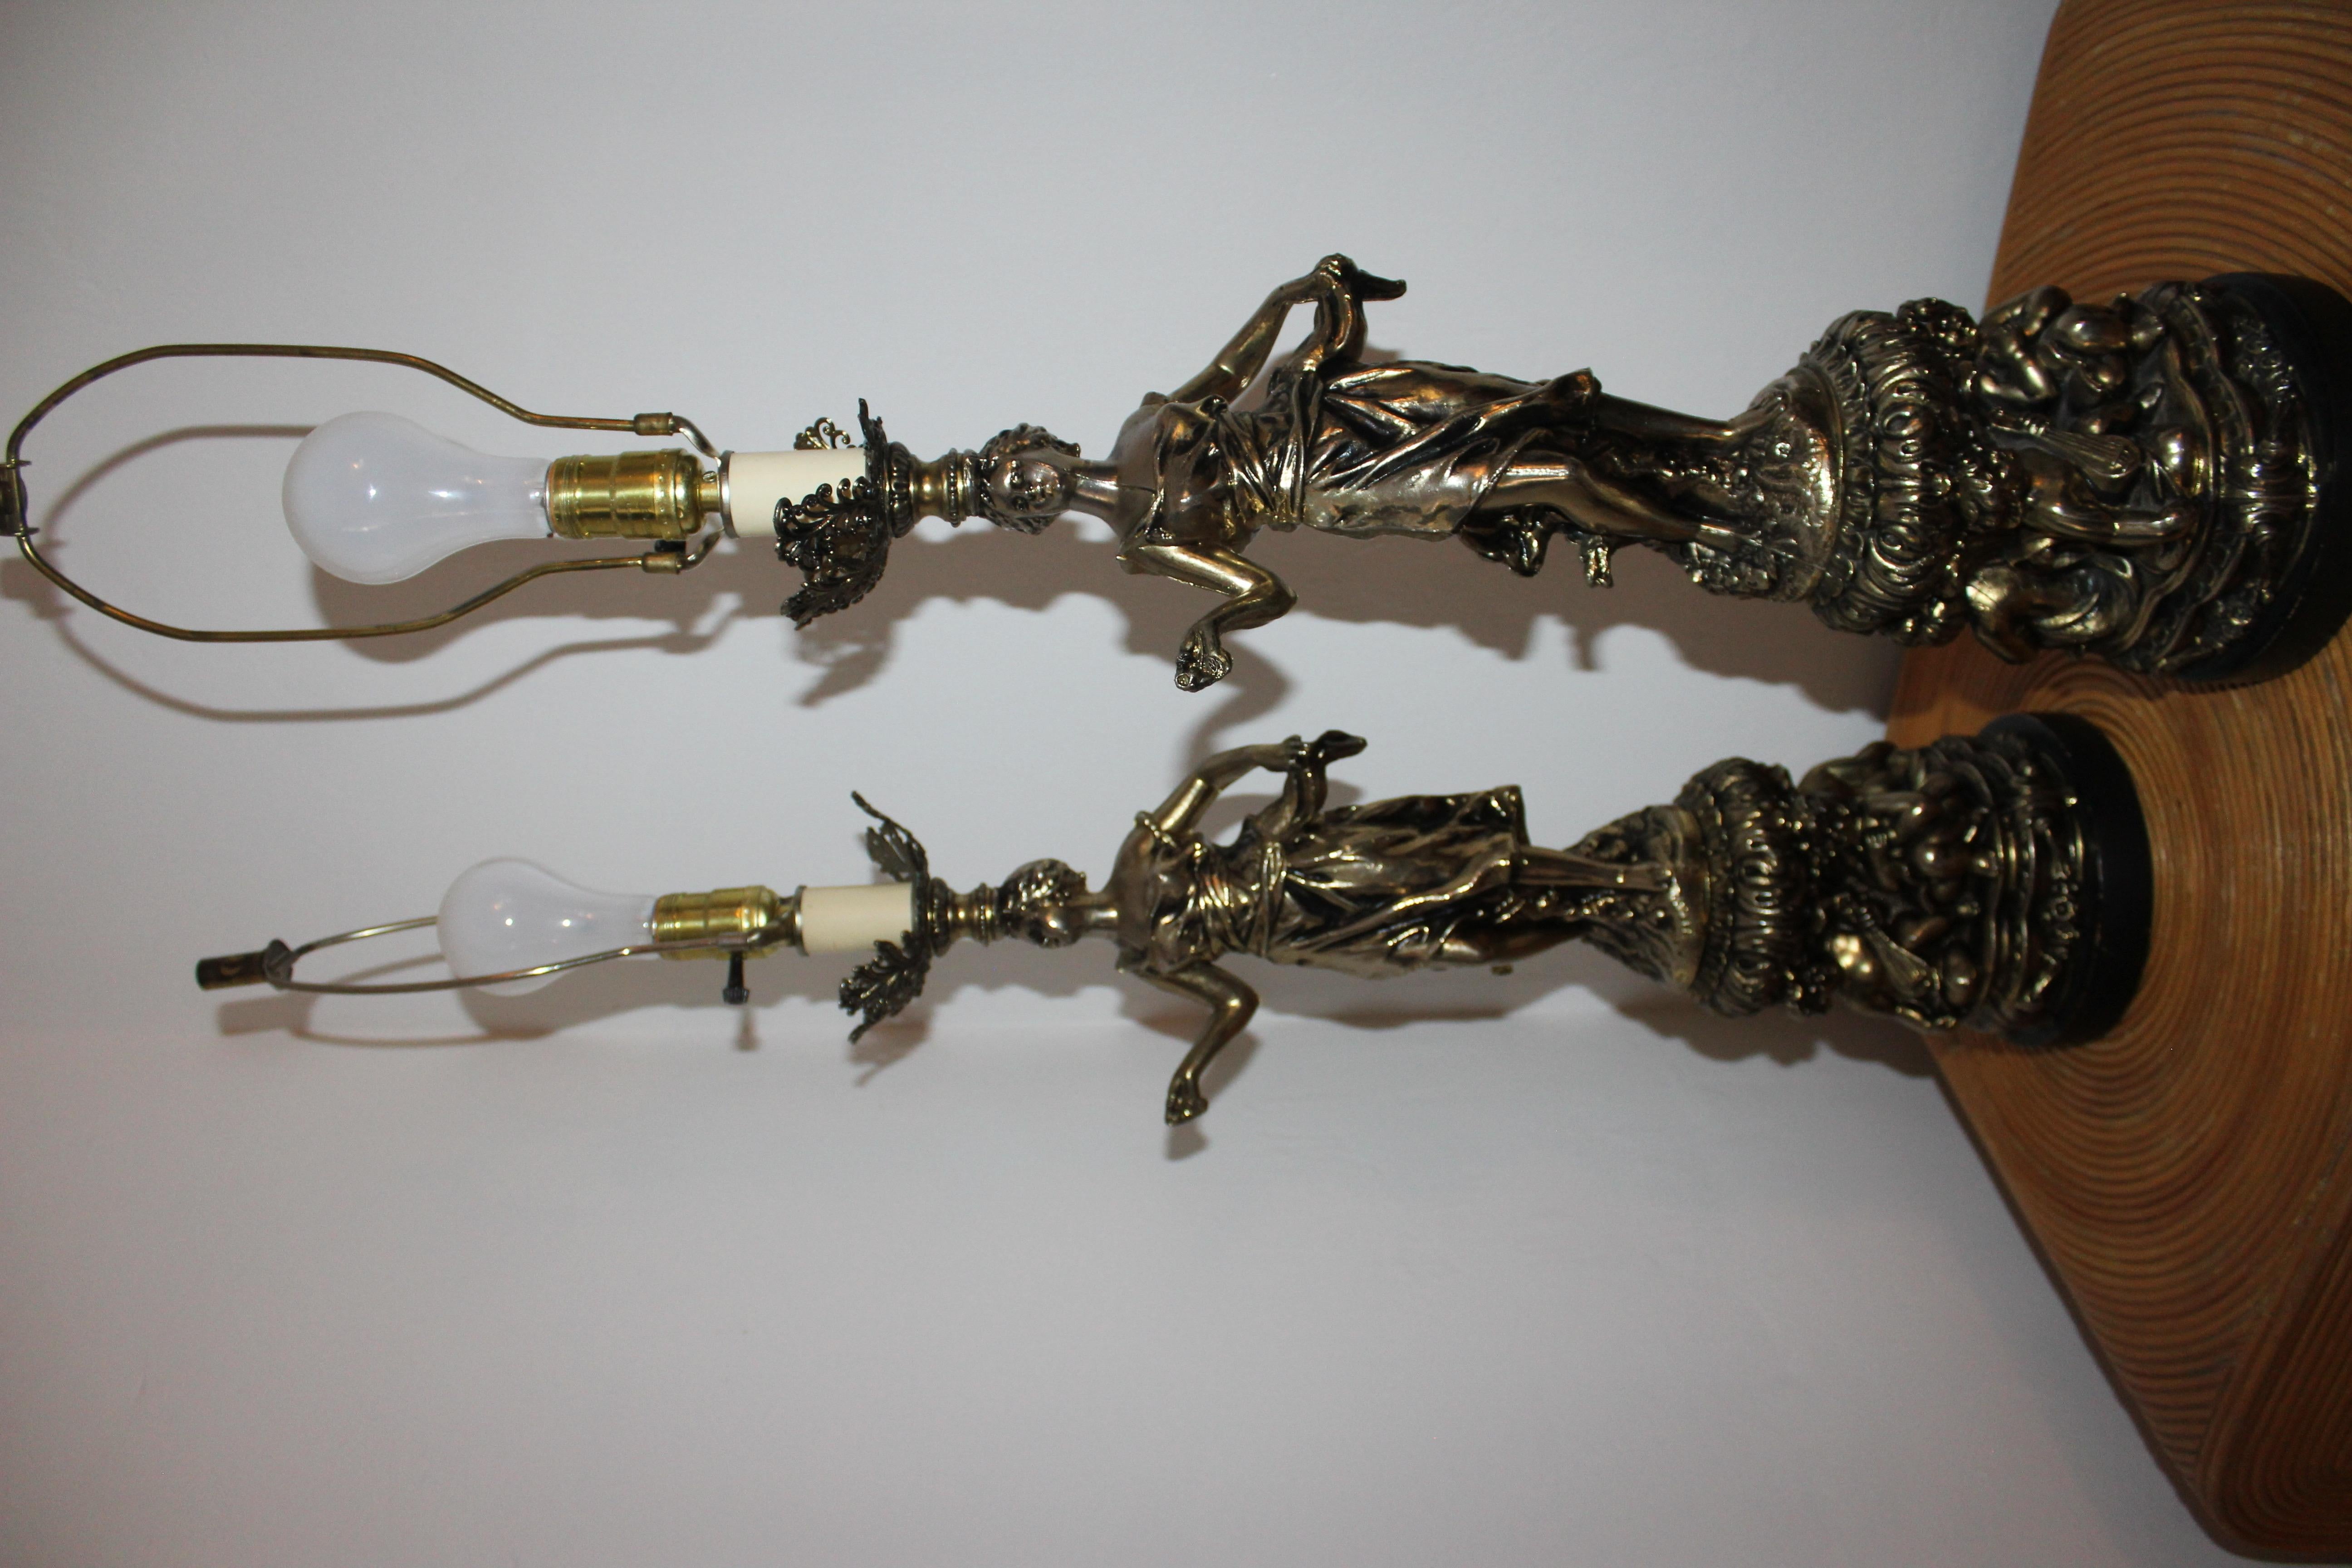 Sehr seltenes, hervorragendes Paar antiker Jugendstil-Lampen aus schwerem Zinnguss mit tanzenden Damen und Cherubinen. Jede stehende Figur stellt eine schöne junge Dame mit halb erhobenen Armen dar, deren Füße eine rhythmische Bewegung andeuten und